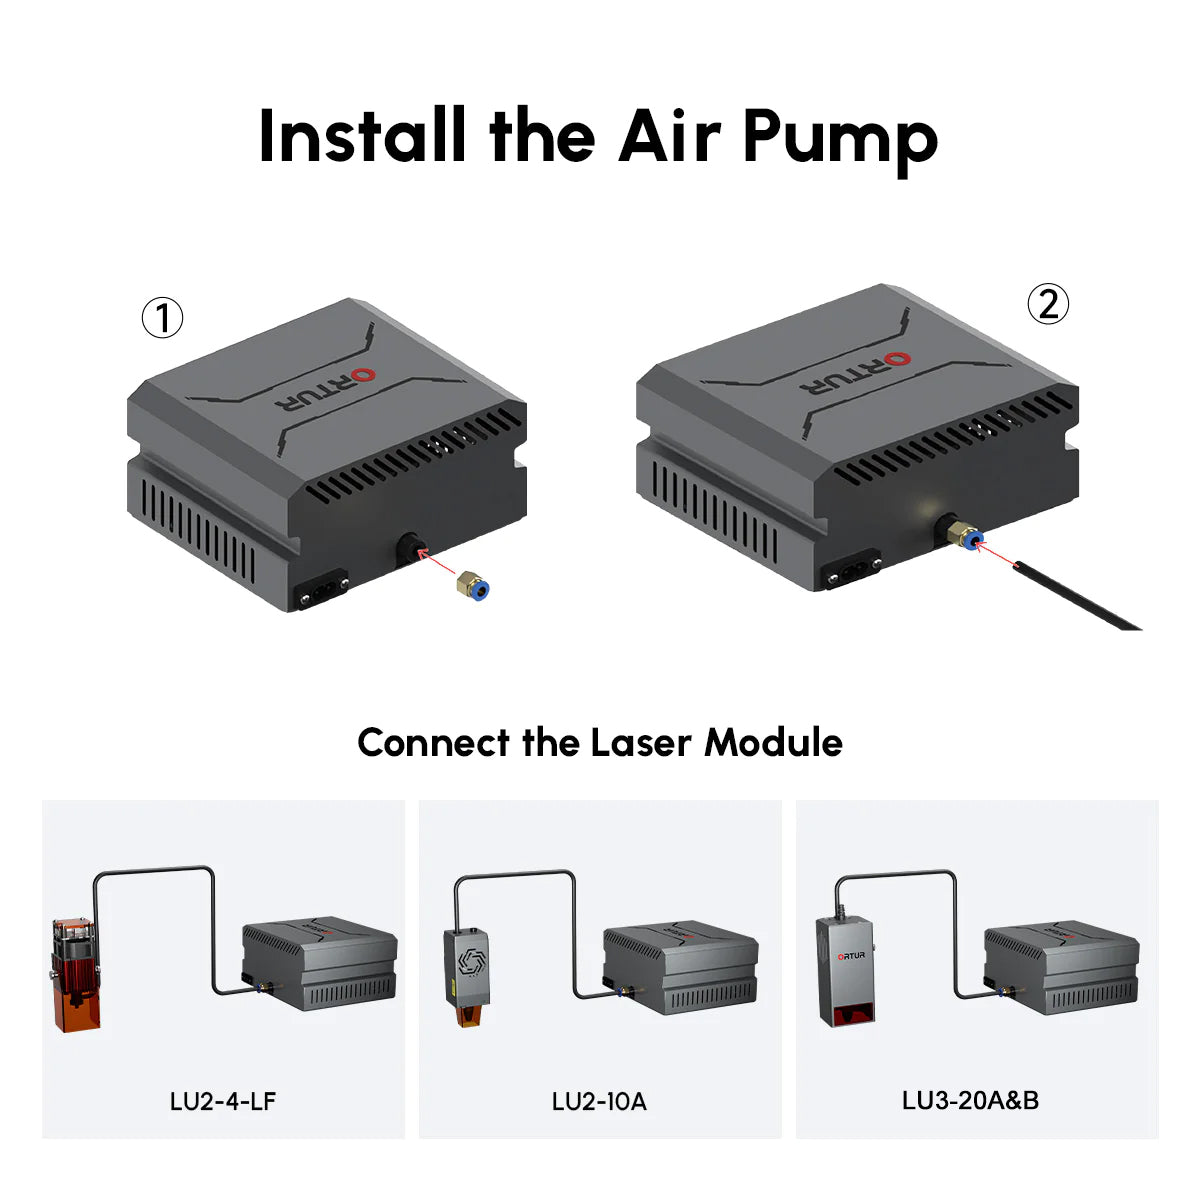 Ortur Air Pump 1.0 pour LU2-4 LF & LU2-10A